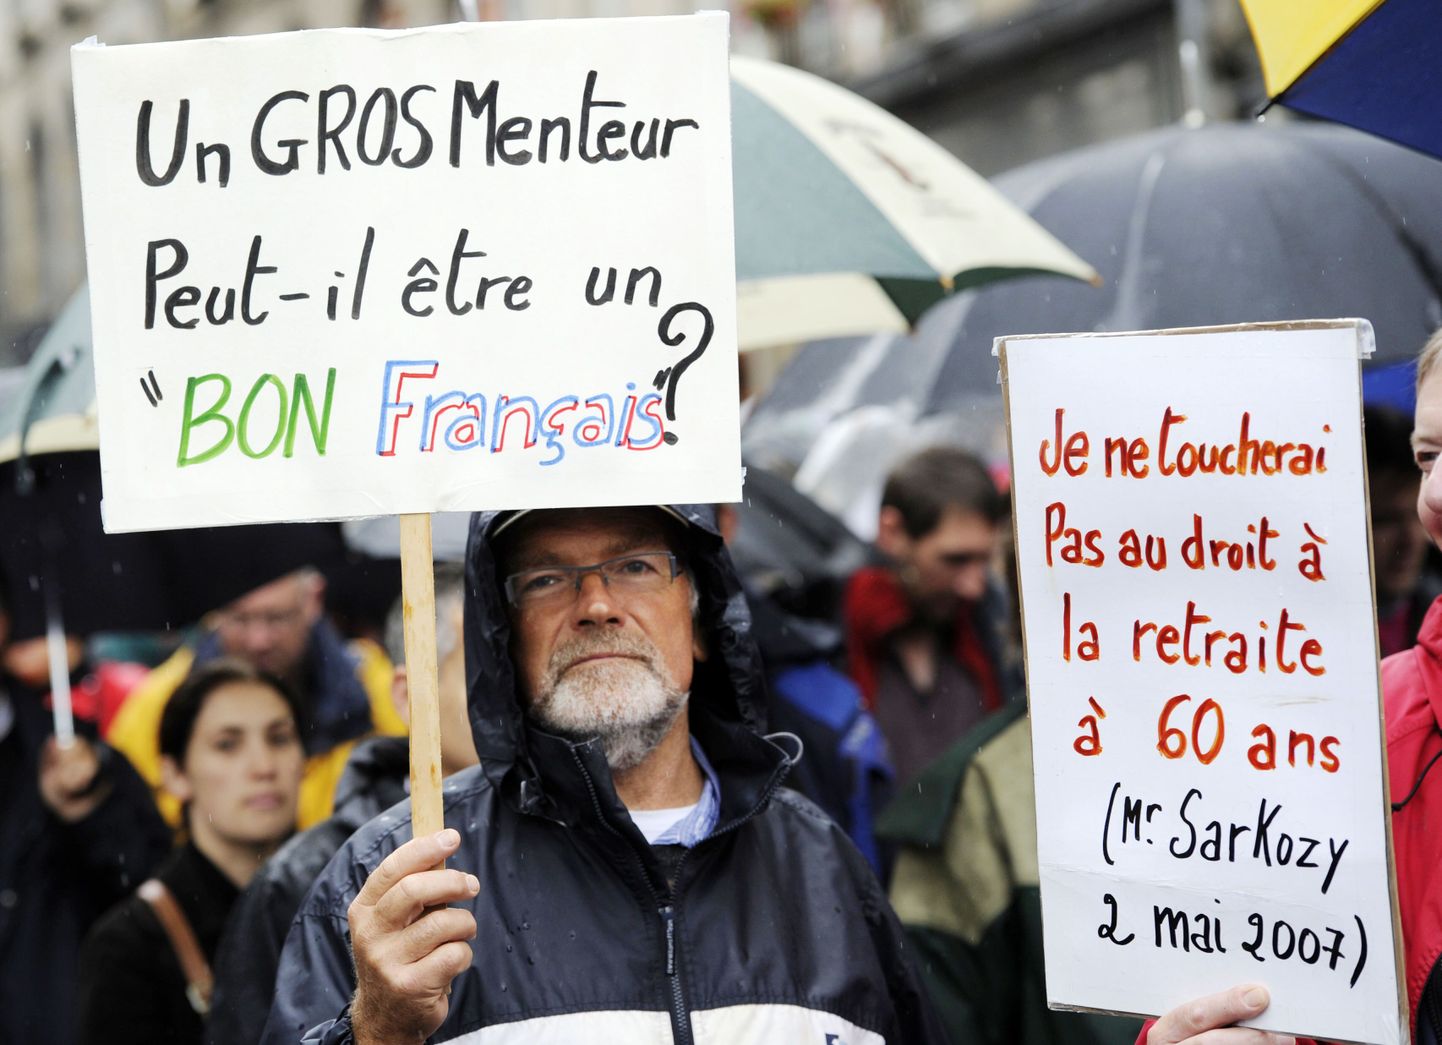 Tänane meeleavaldus Rennes'is: "Kas suur valevorst võib olla hea prantsuse mees?" (vasakul) ja "Ma ei puutu õigust minna 60-aastaselt pensionile (Sarkozy 2. mail 2007)".